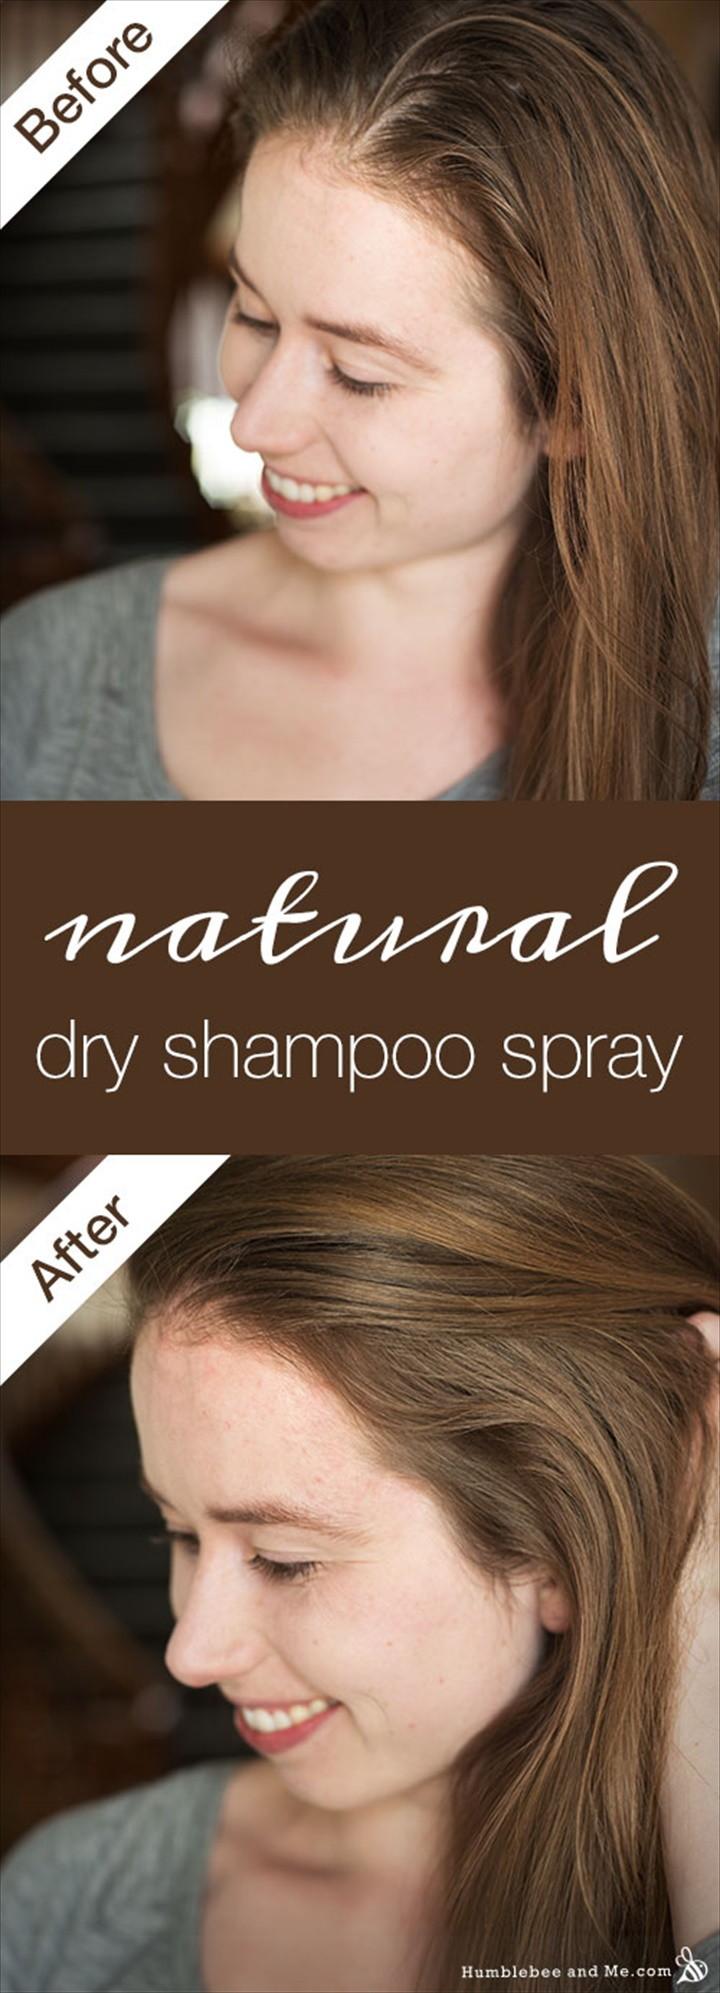 Natural Dry Shampoo Spray